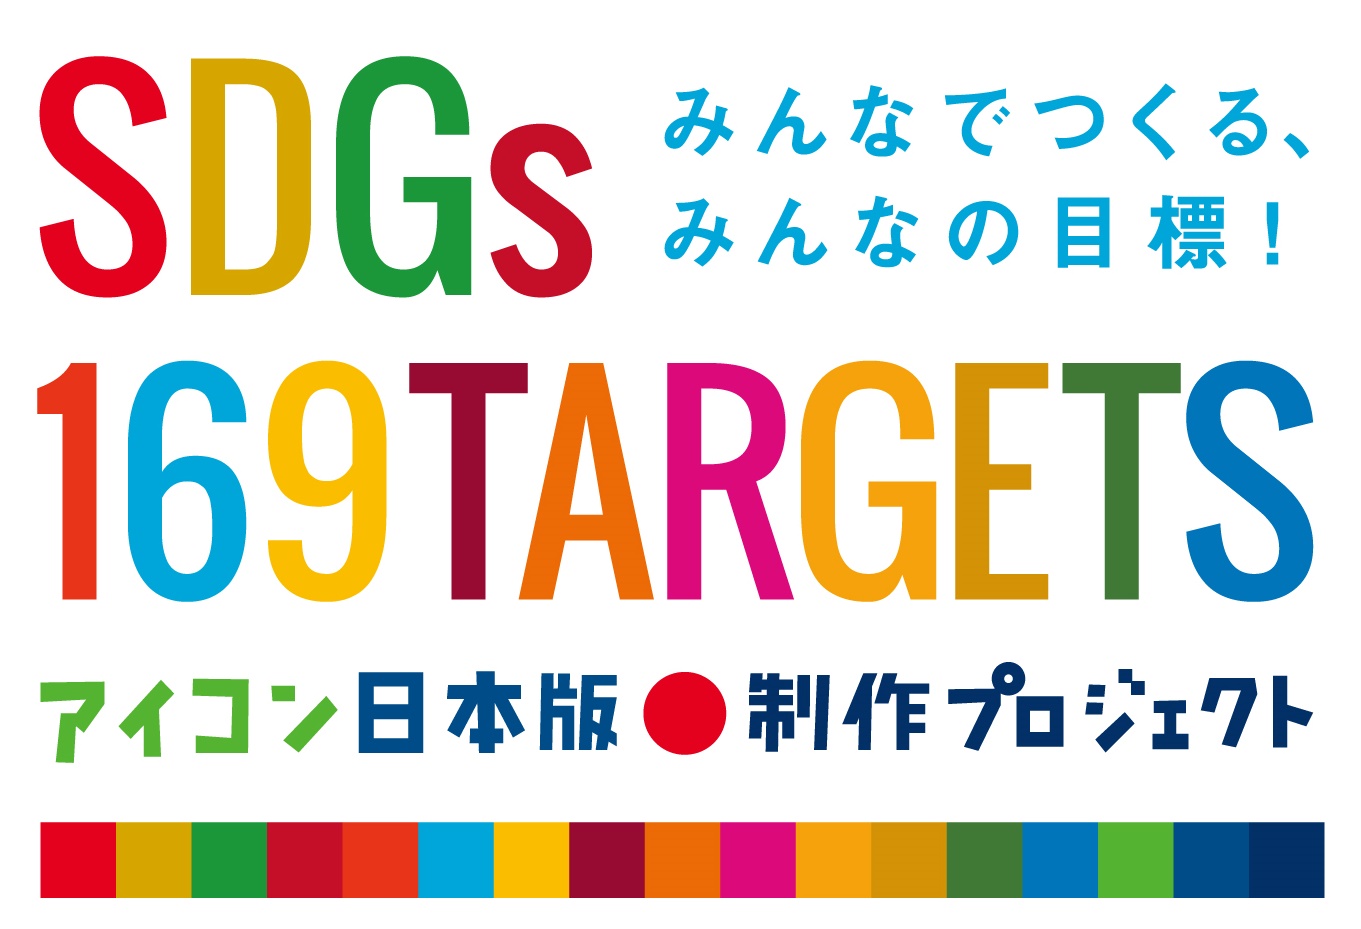 みんなでつくる みんなの目標 Sdgs169ターゲットアイコン日本版制作プロジェクト 日本語コピーを募集する広告を掲載 株式会社朝日新聞社のプレスリリース